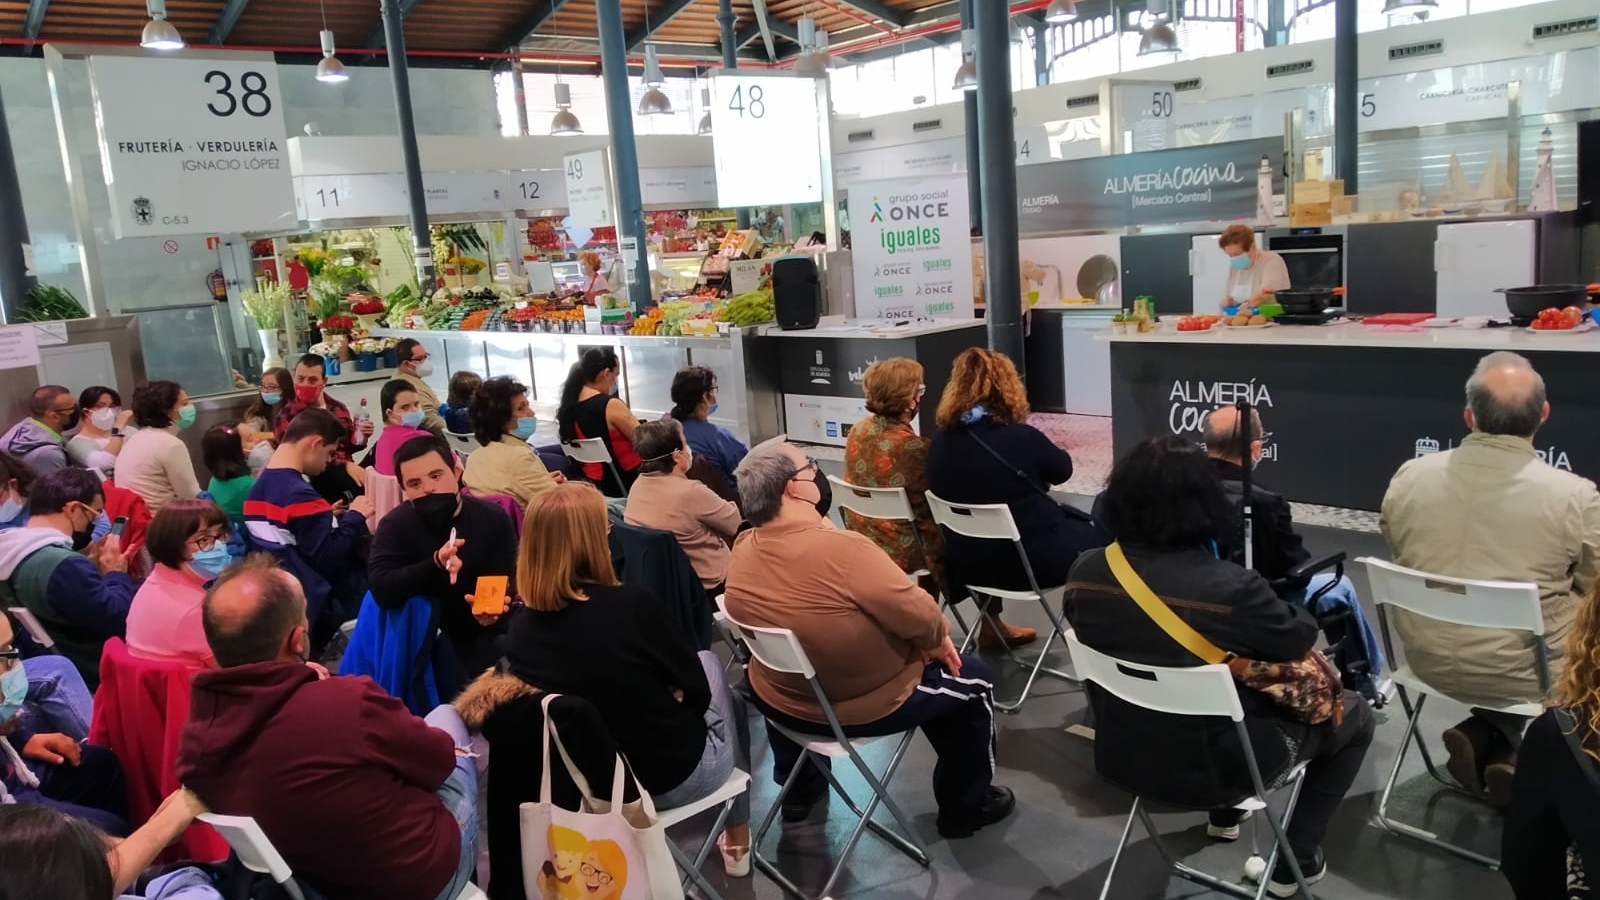 Jornadas gastronómicas para asociación de discapacidad - Almería